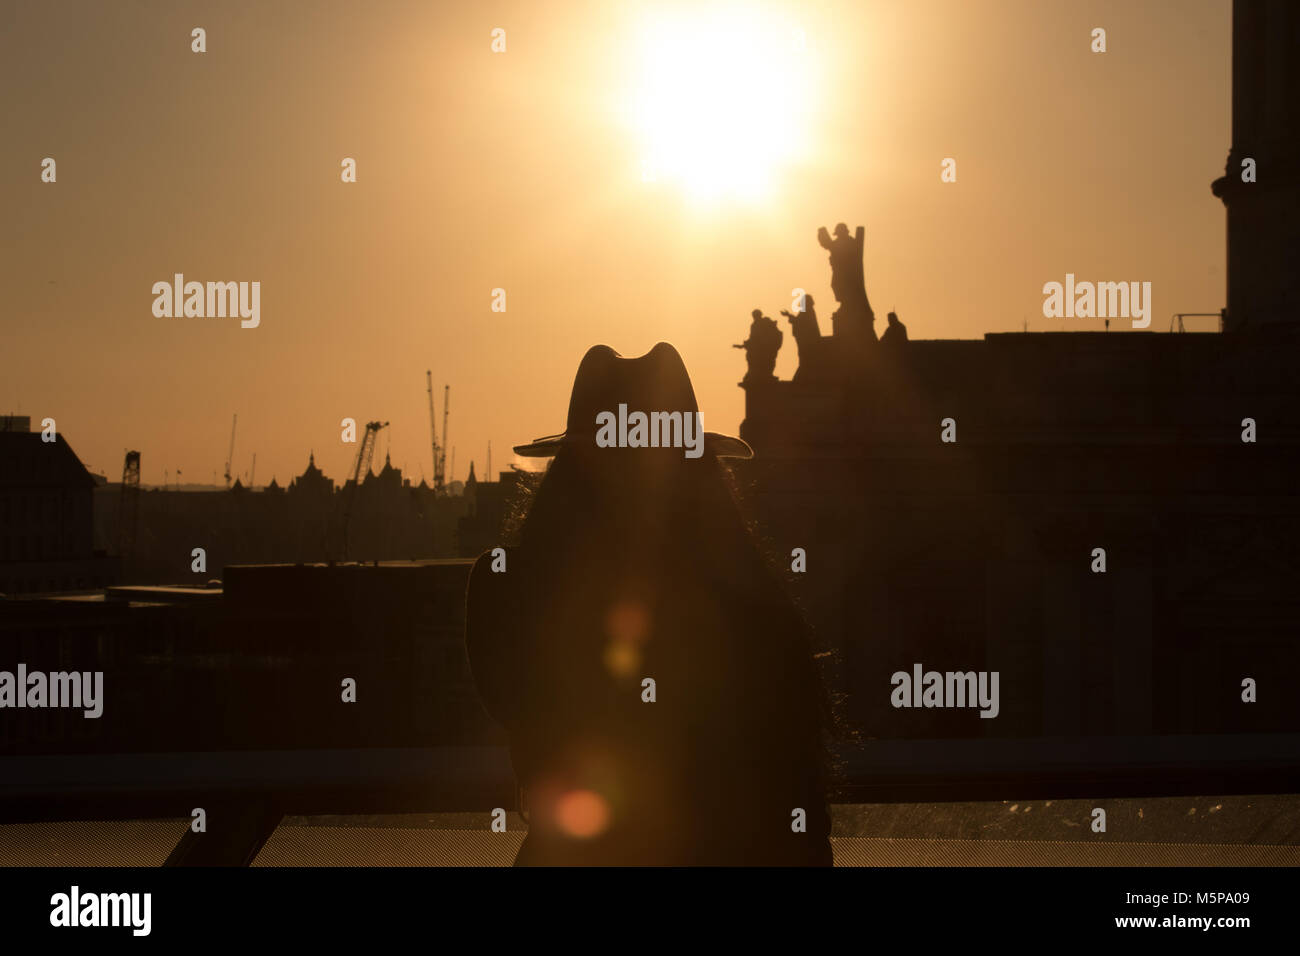 Londres, Royaume-Uni. 25 février 2018. Abeautiful coucher du soleil, le début du coucher de soleil vu de la terrasse du toit d'un nouveau changement. Visiteur dans un chapeau en tenant vos autoportraits dans le coucher du soleil. Credit : Carol Moir/Alamy Live News. Banque D'Images